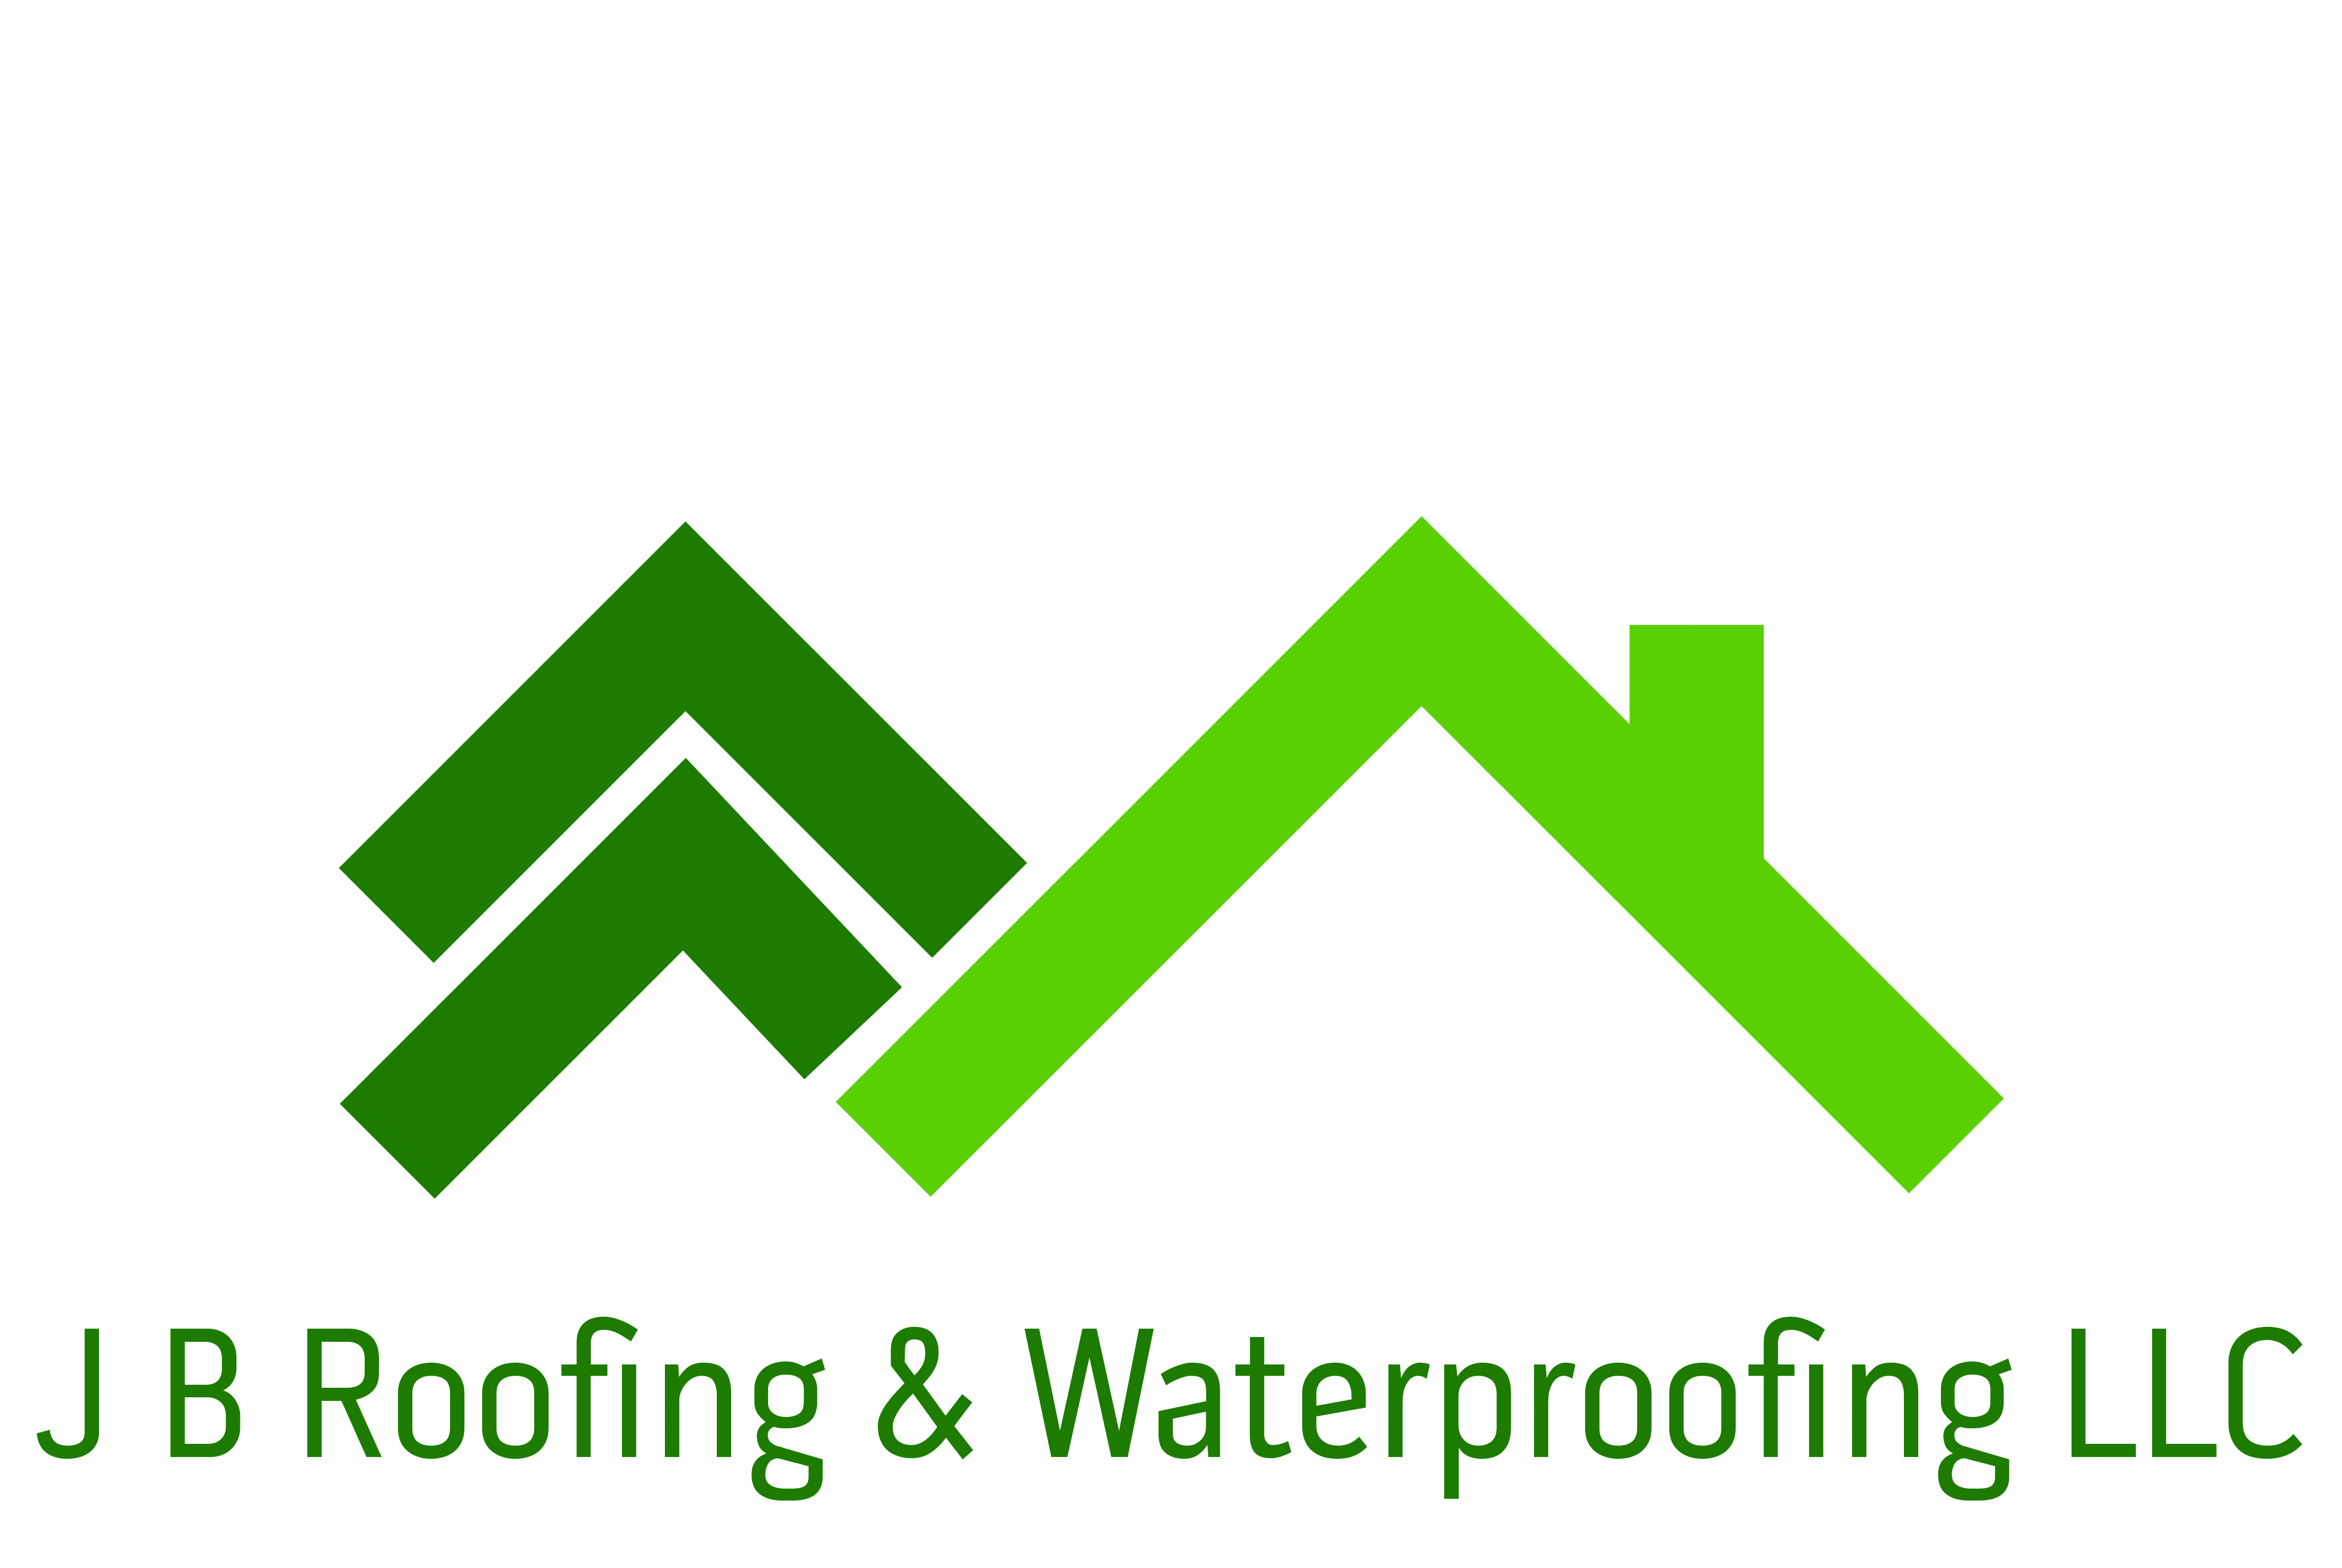 J B Roofing & Waterproofing LLC